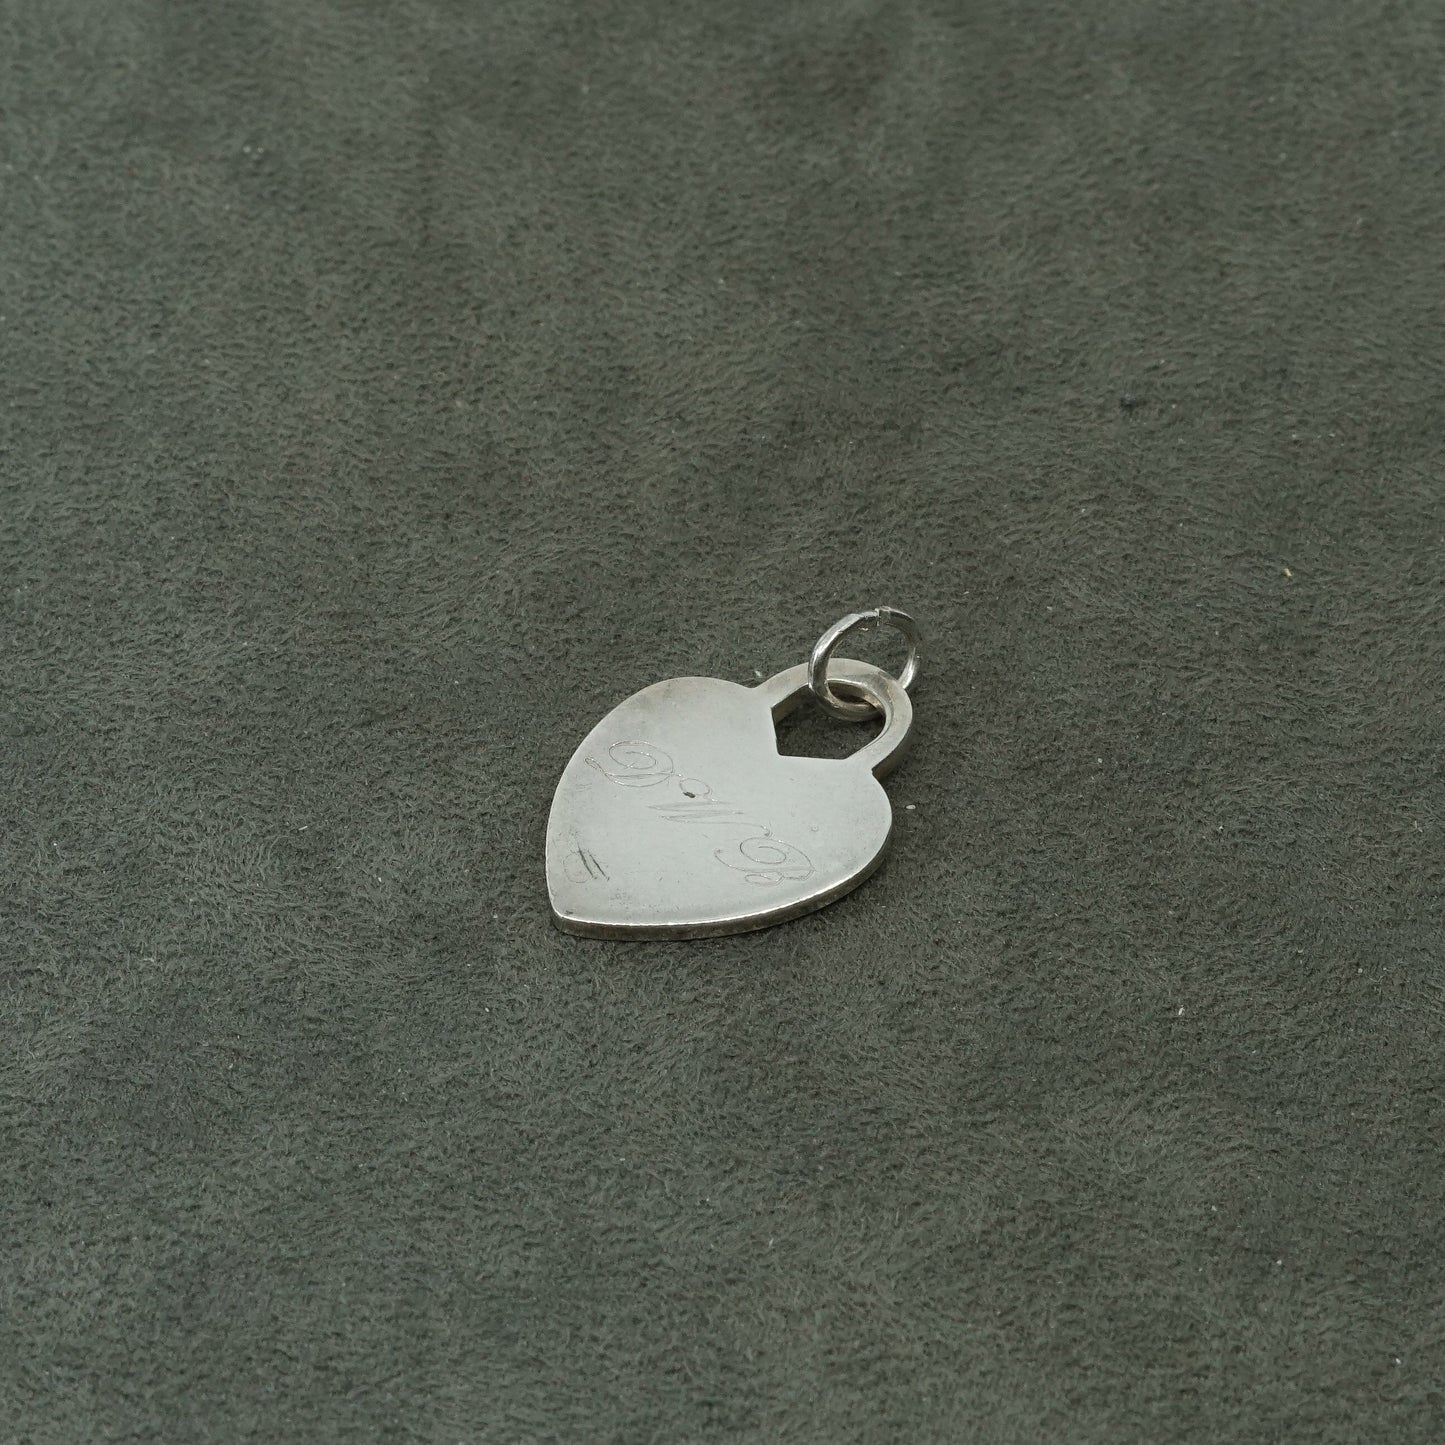 vtg Sterling silver handmade pendant, 925 heart w/ name monogram "DWB"